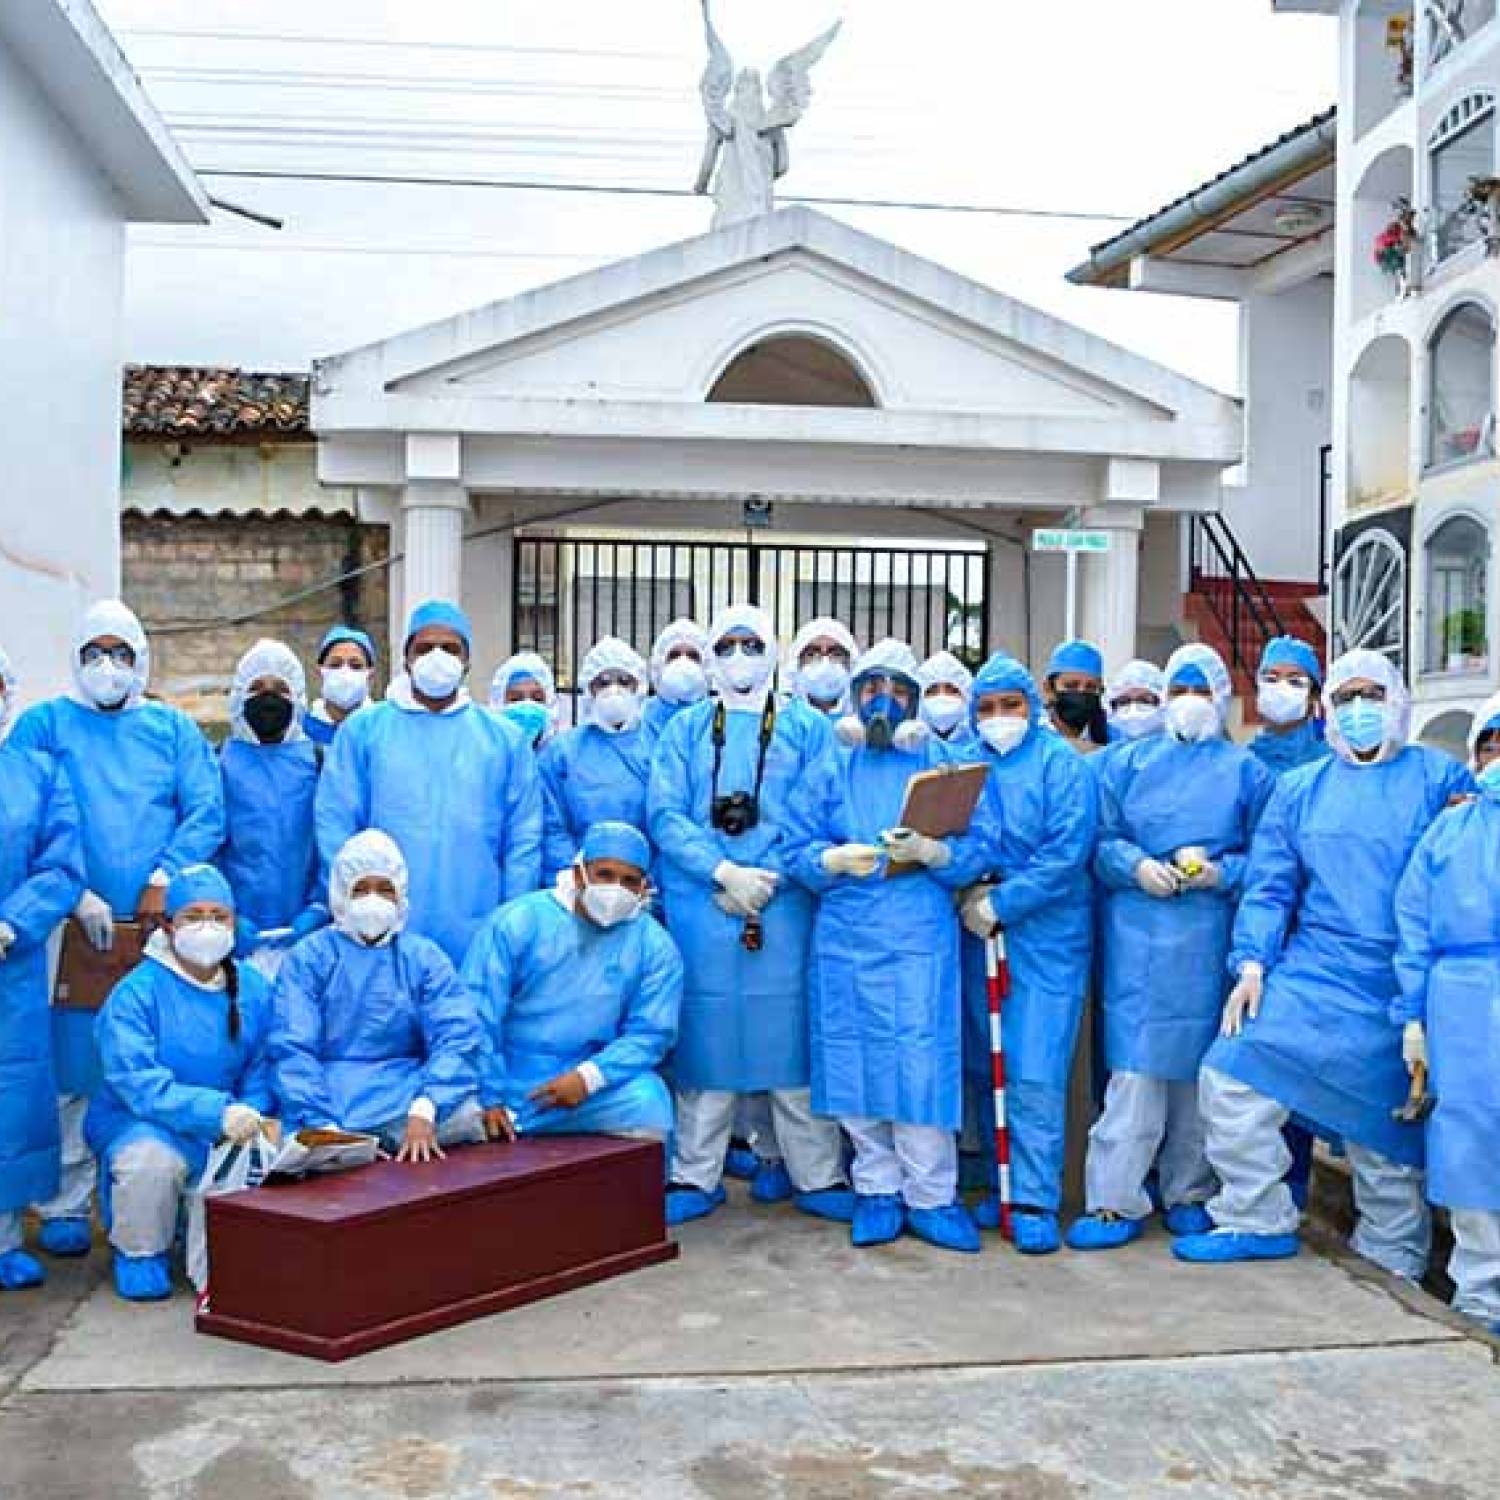 Estudiantes de Antropología participan en exhumación de restos humanos en el Cementerio General de Chachapoyas